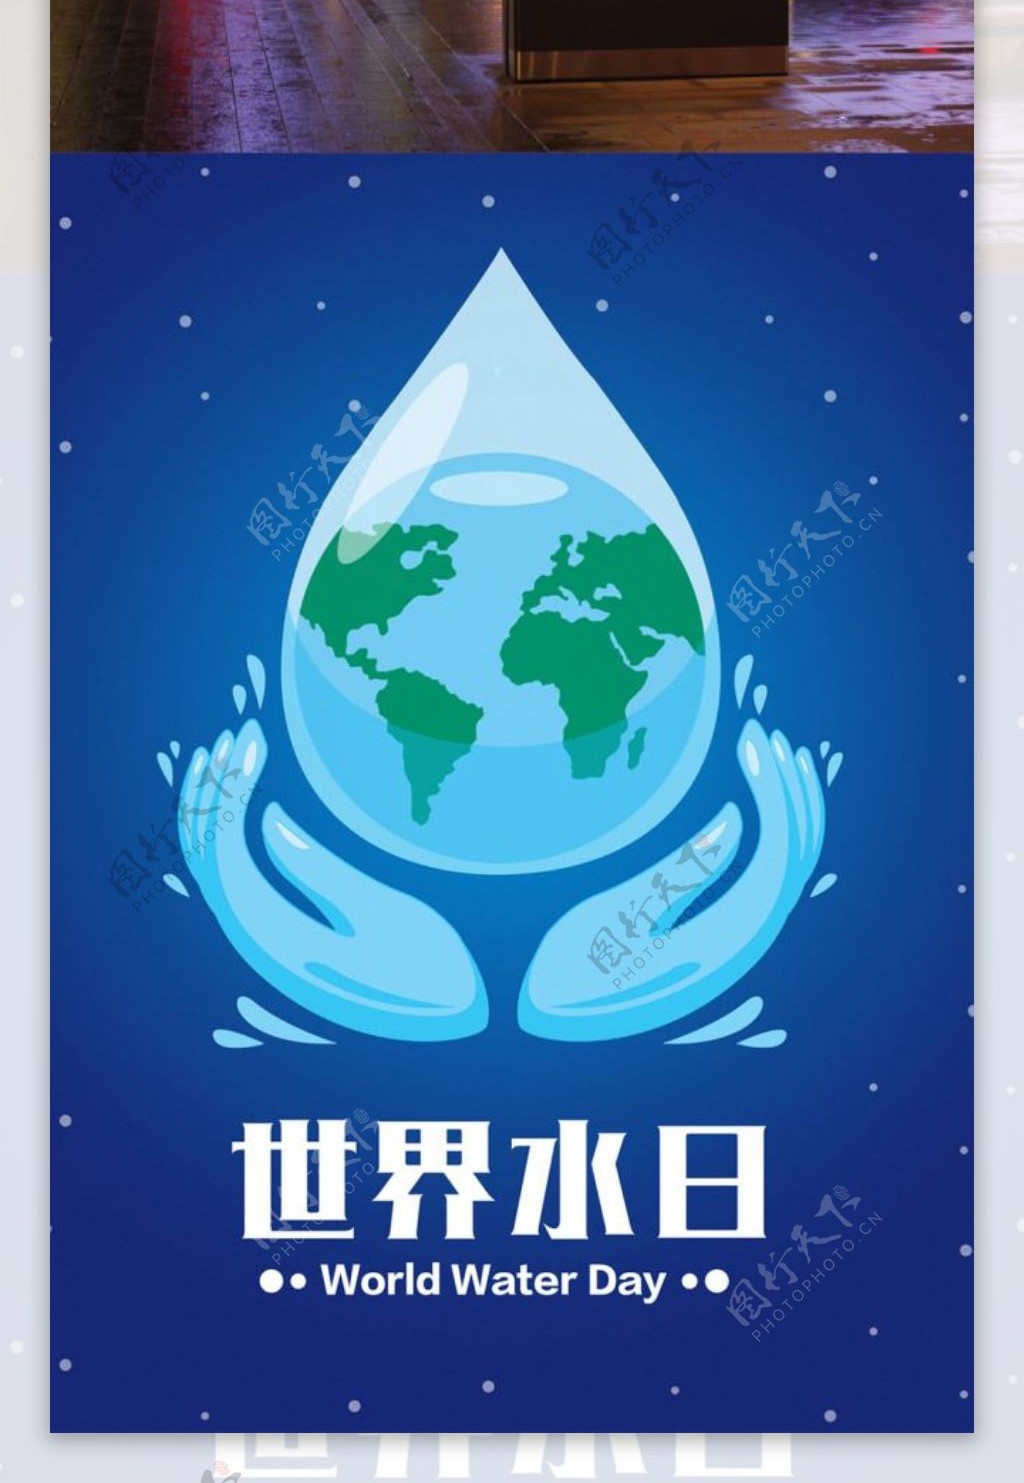 322世界水日海报公益宣传公益